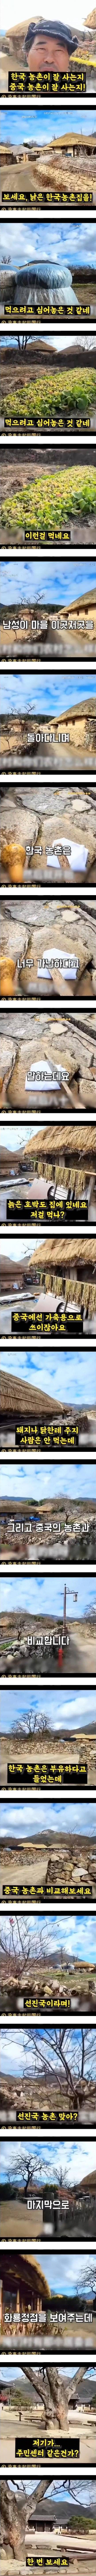 한국 농촌의 실상이라며 짱퀴벌레가 올린 영상